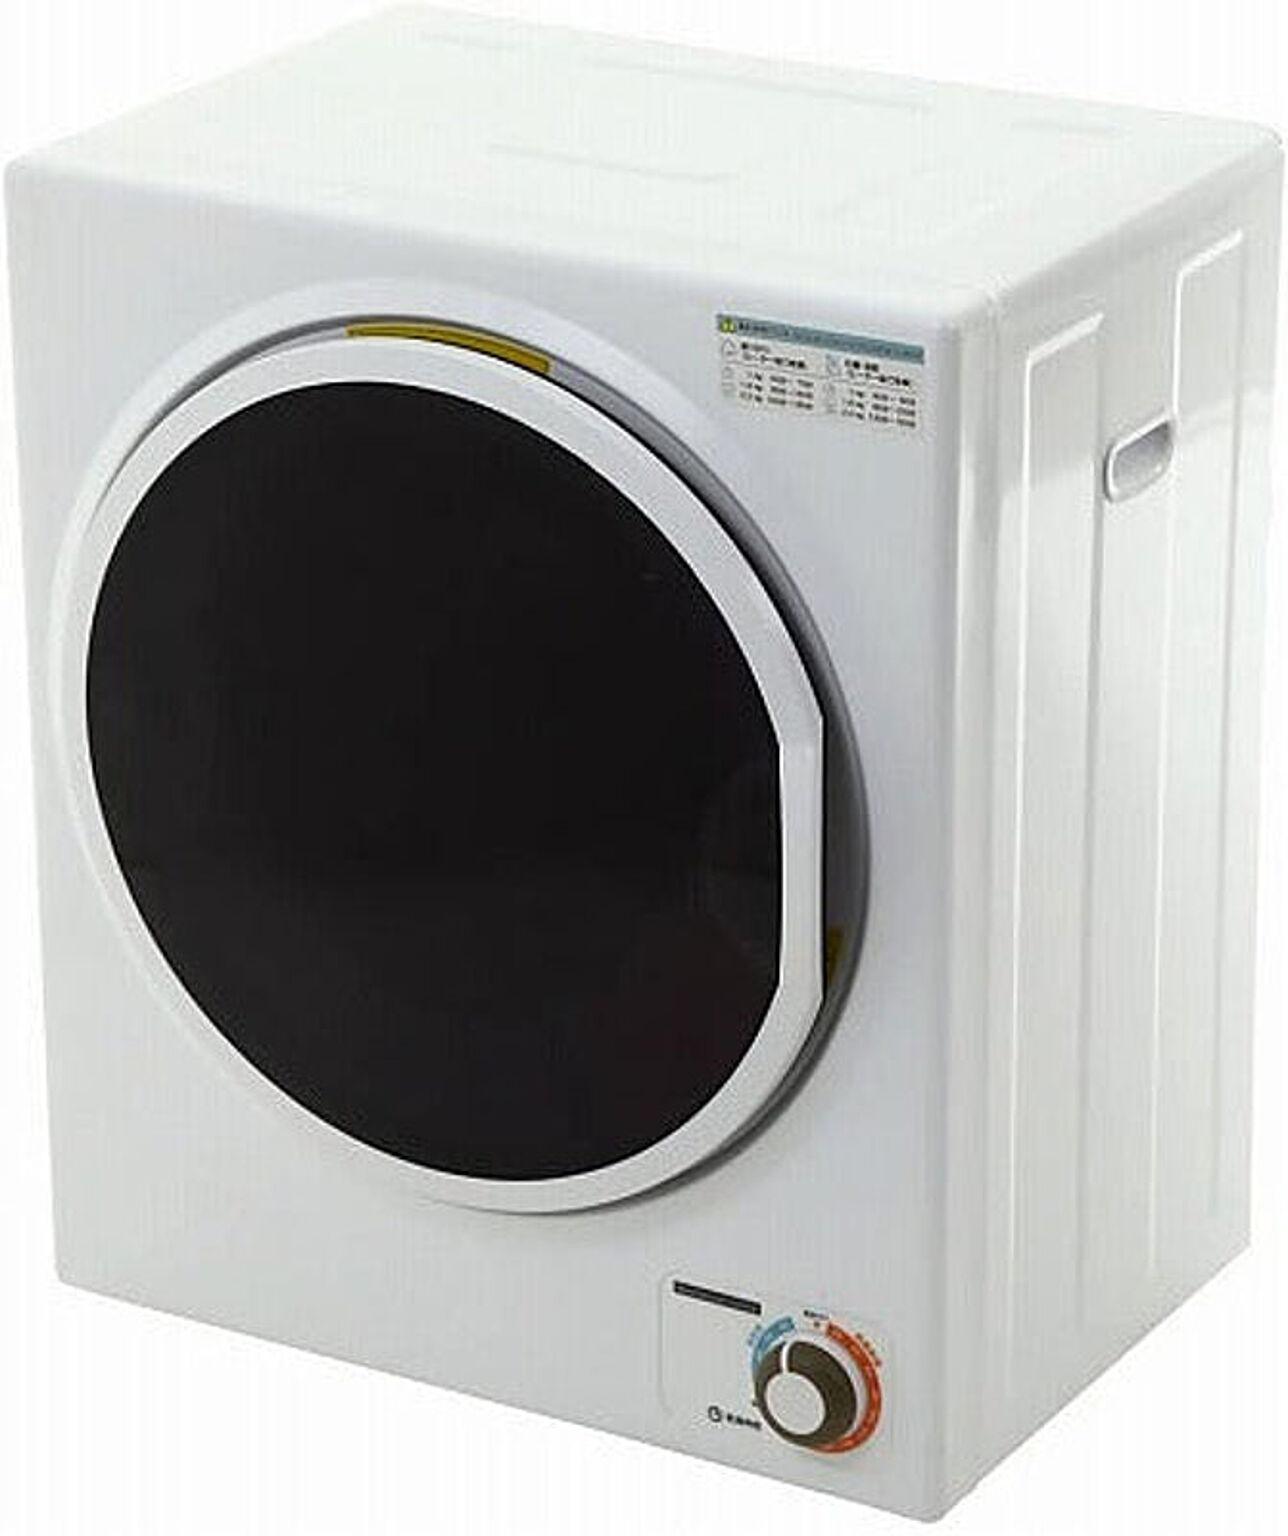 衣類乾燥機 梅雨対策 部屋干し対策 小型 Sun Ruck 小型衣類乾燥機 乾燥容量2.5kg サンルック SR-ASD025W